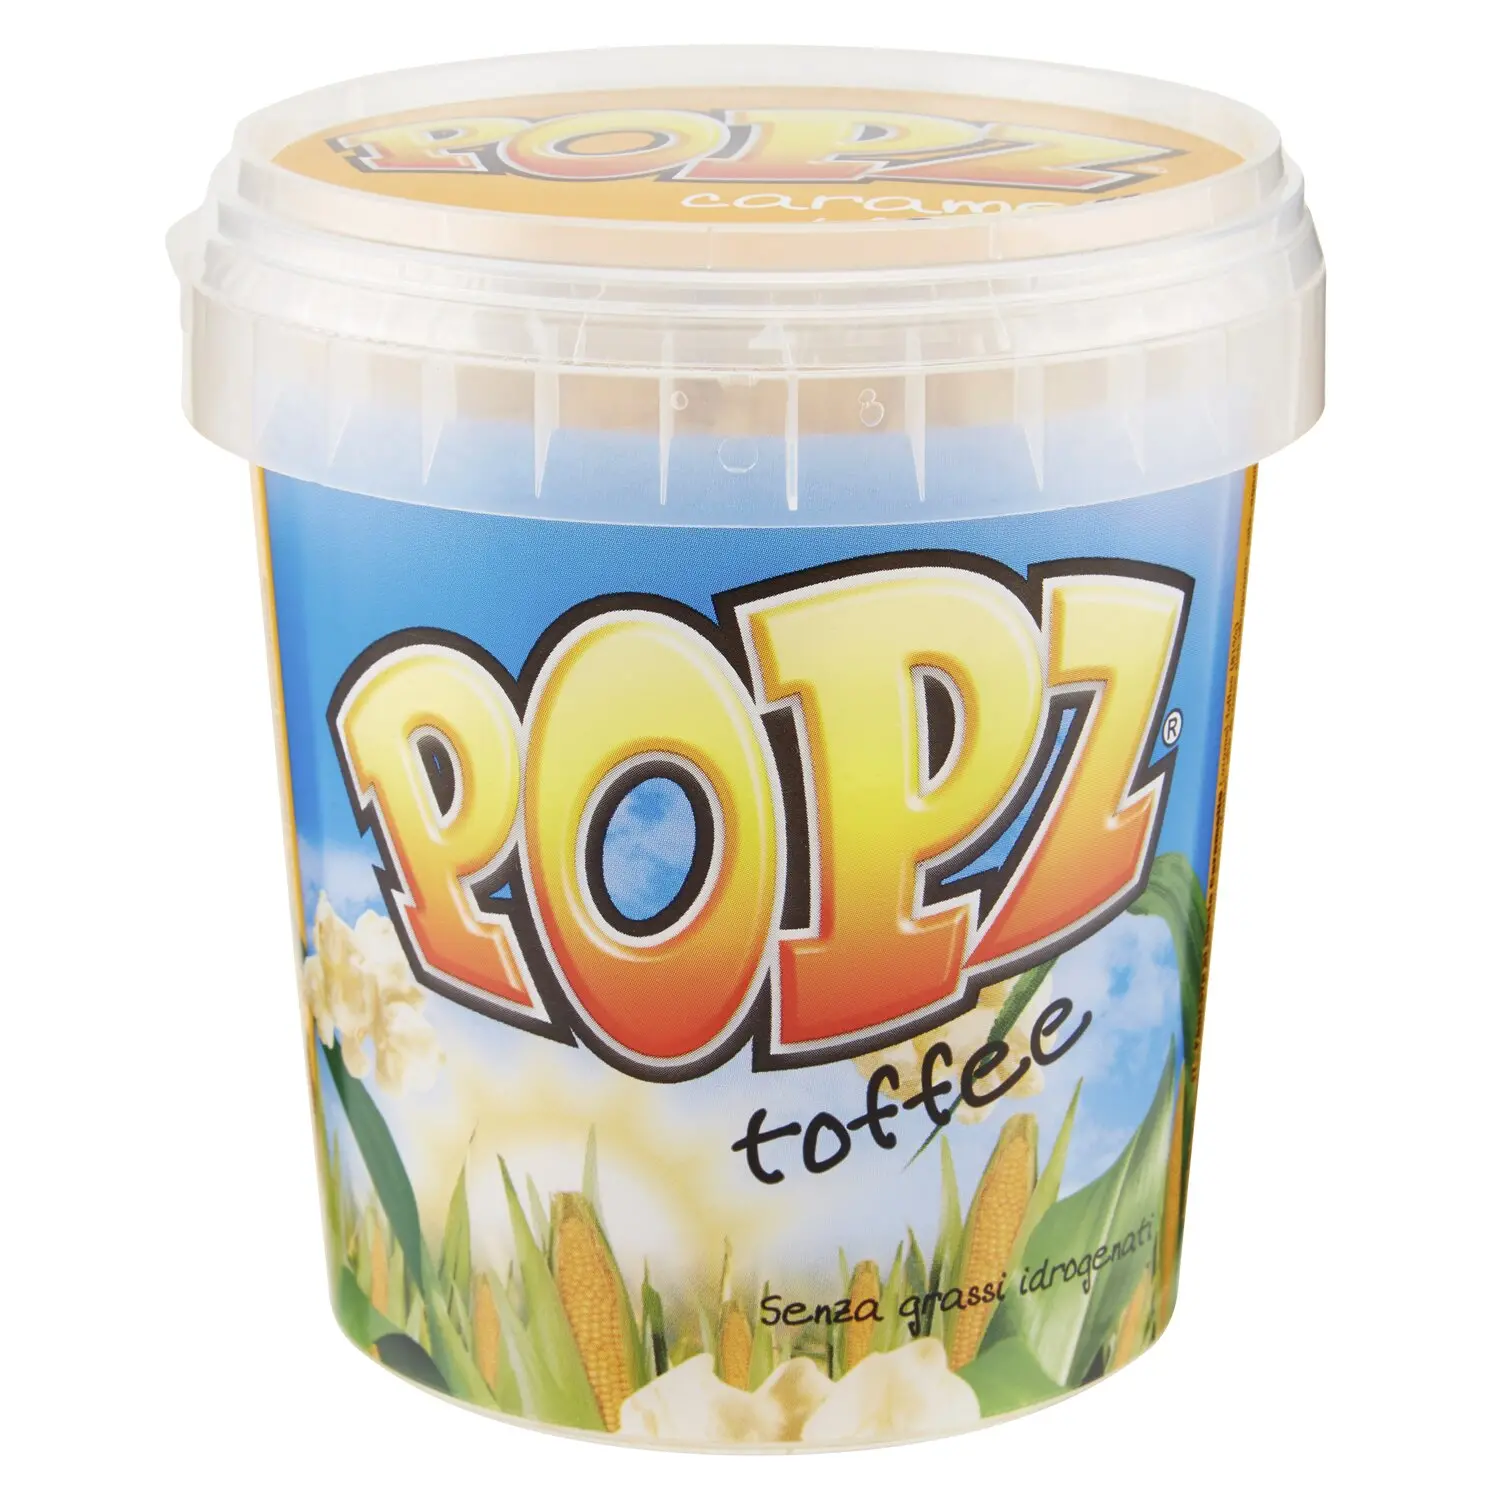 Popz Toffee 135 g